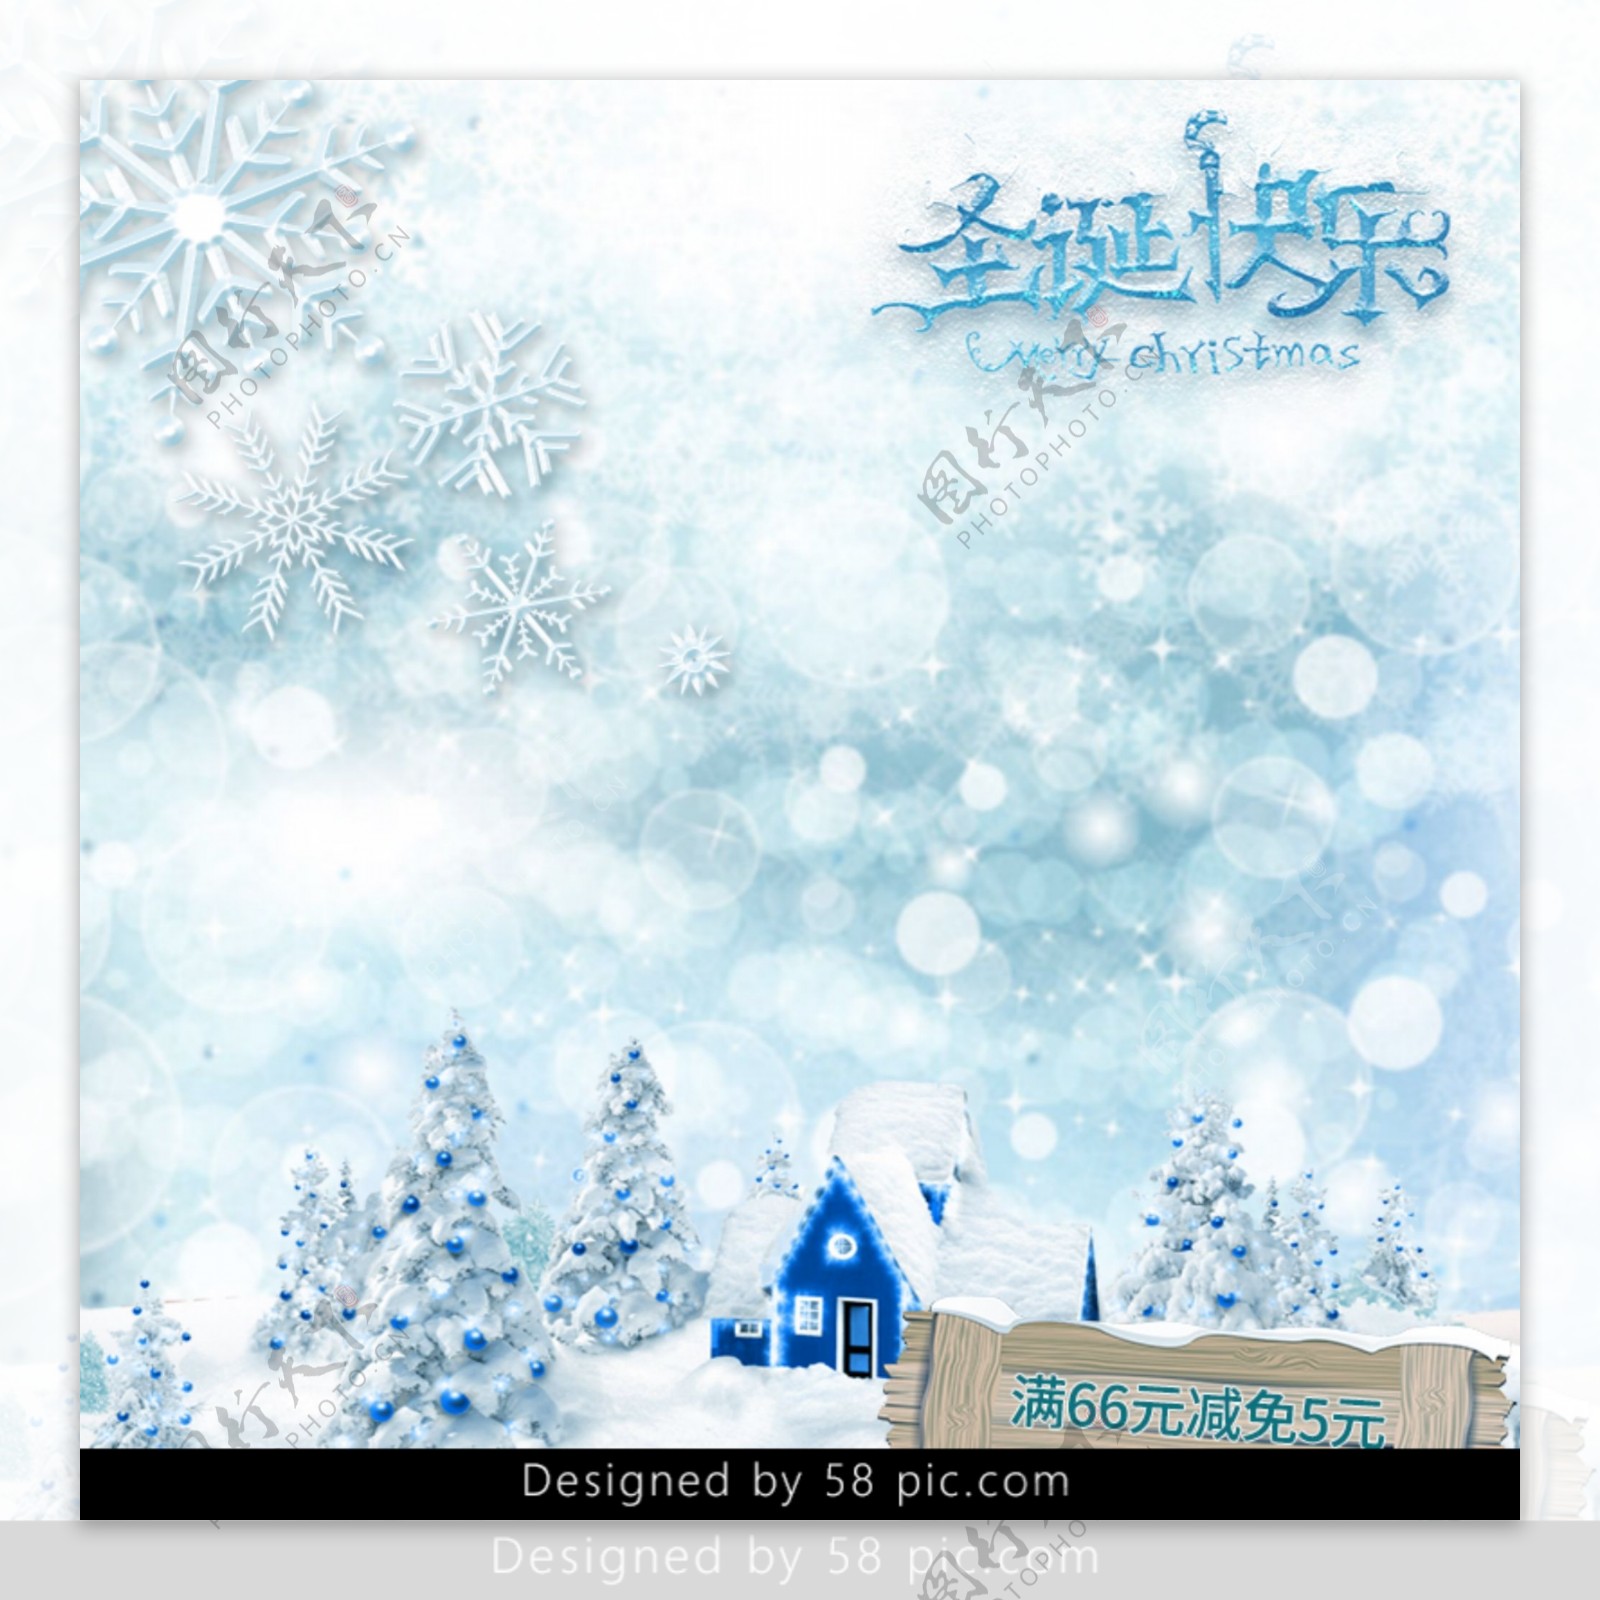 淡蓝色寒冷雪花冰雪背景圣诞快乐电商主图